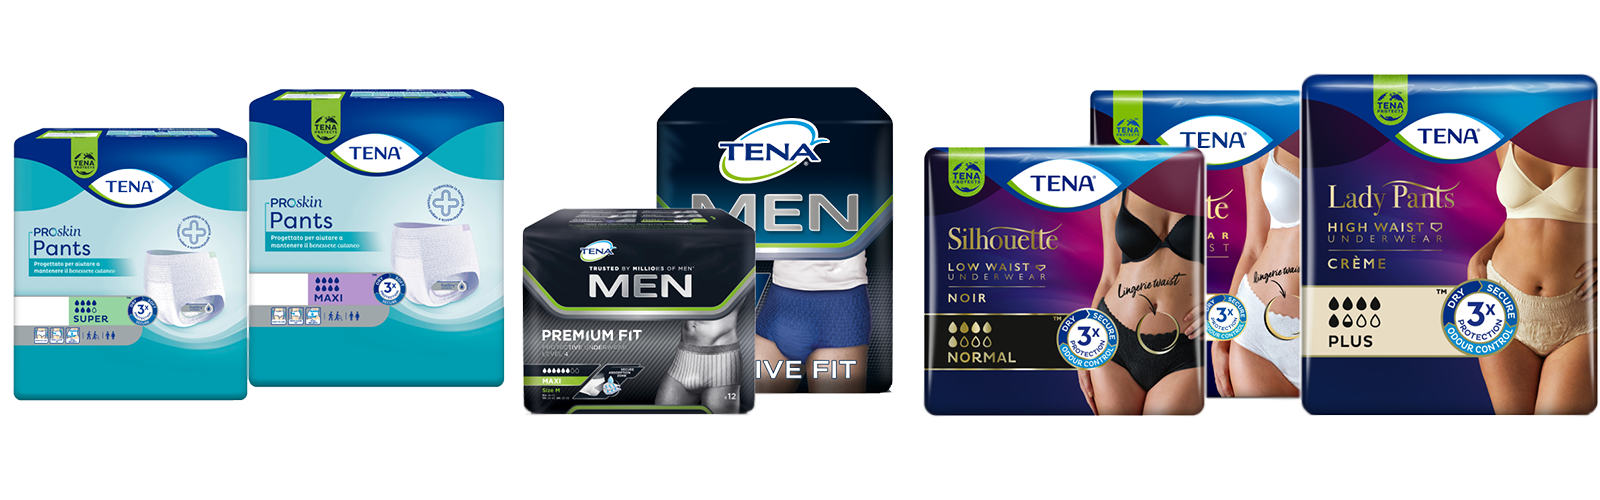 Immagine della gamma di prodotti TENA Pants 